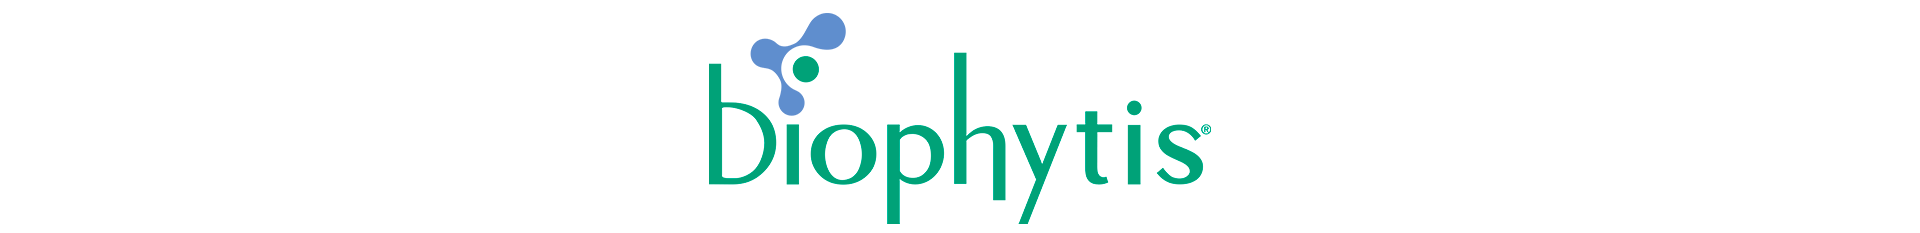 biophytis logo